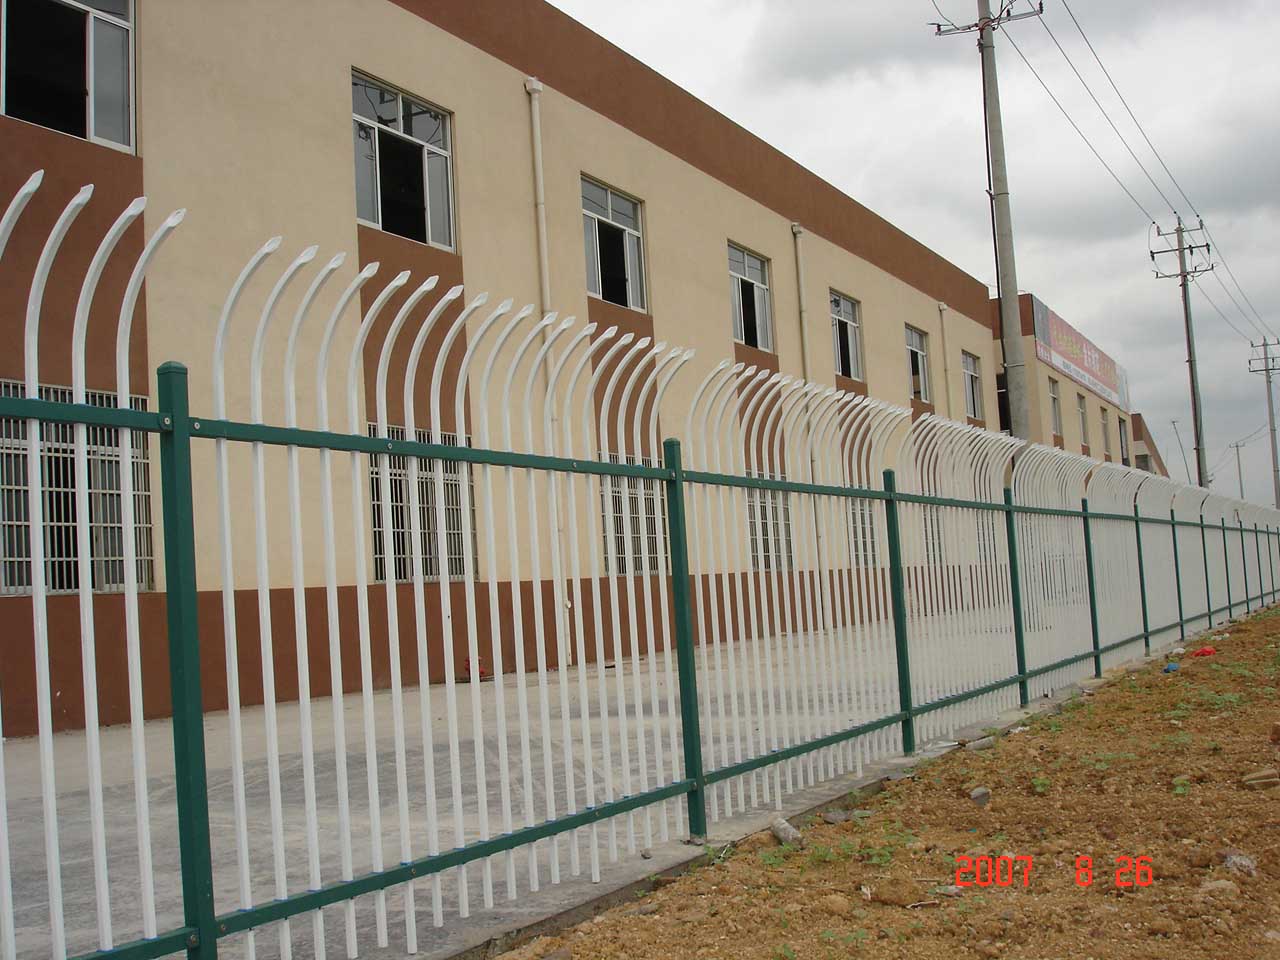 供应泰州组装式围墙栏杆价格给力、泰州E型防爬围墙栏杆厂家直销